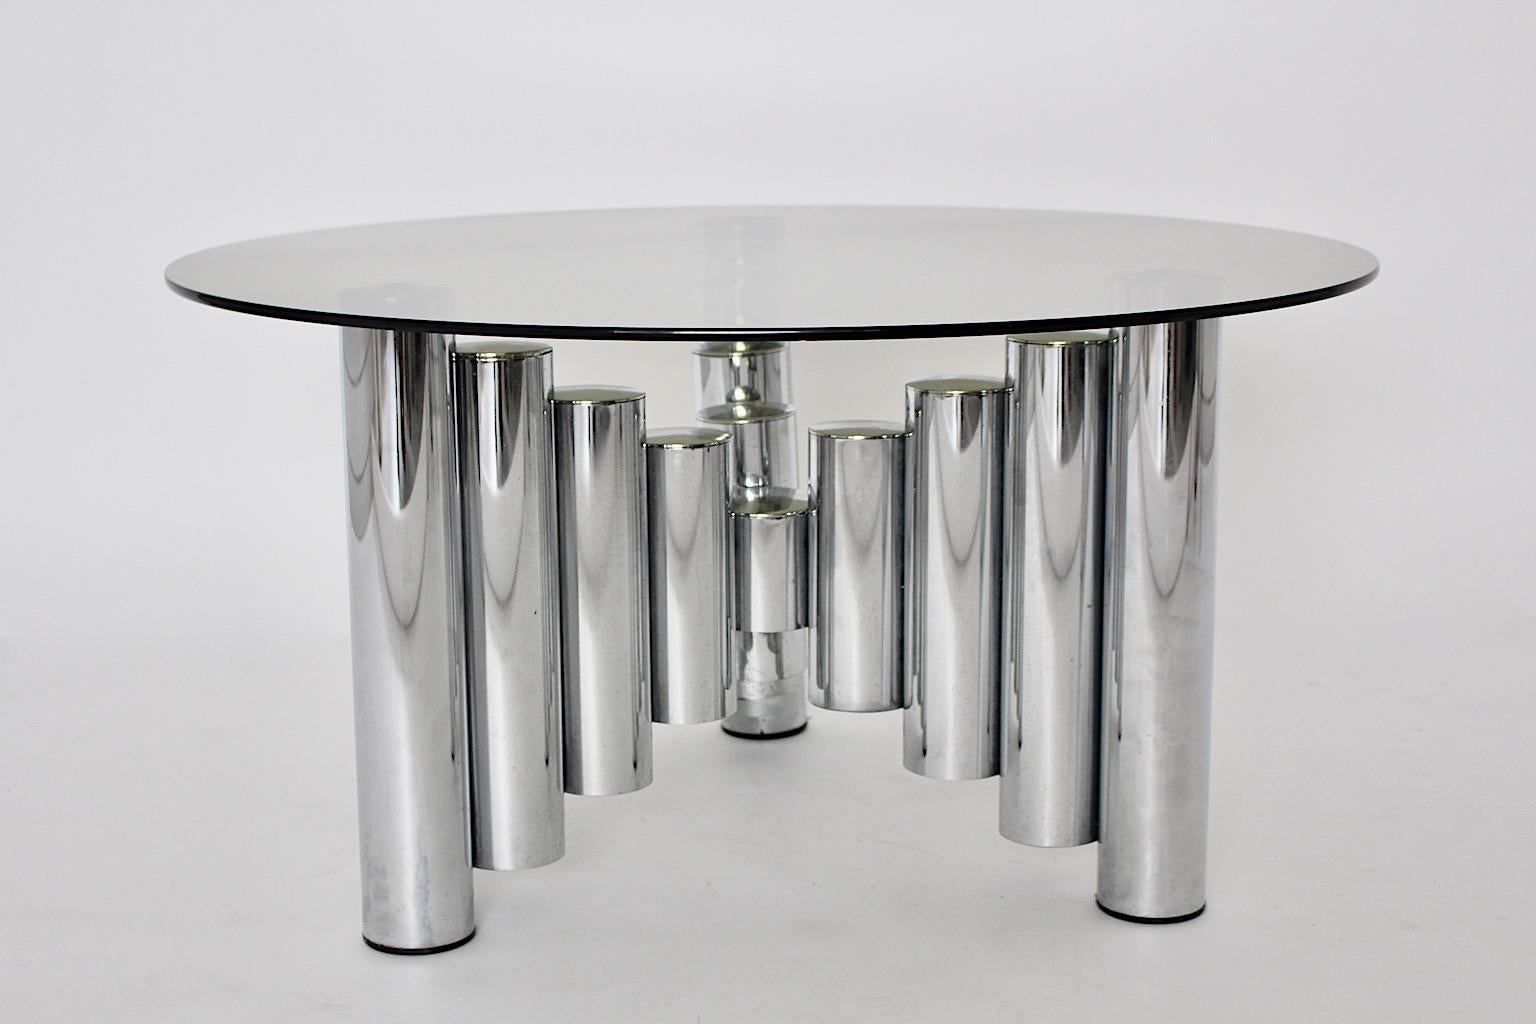 Table basse vintage sculpturale circulaire moderniste avec base en métal chromé et plateau en verre verdâtre, Italie des années 1960.
Magnifique table basse chromée surmontée d'une plaque de verre verdâtre. 
Cette table basse avec des tubes en métal